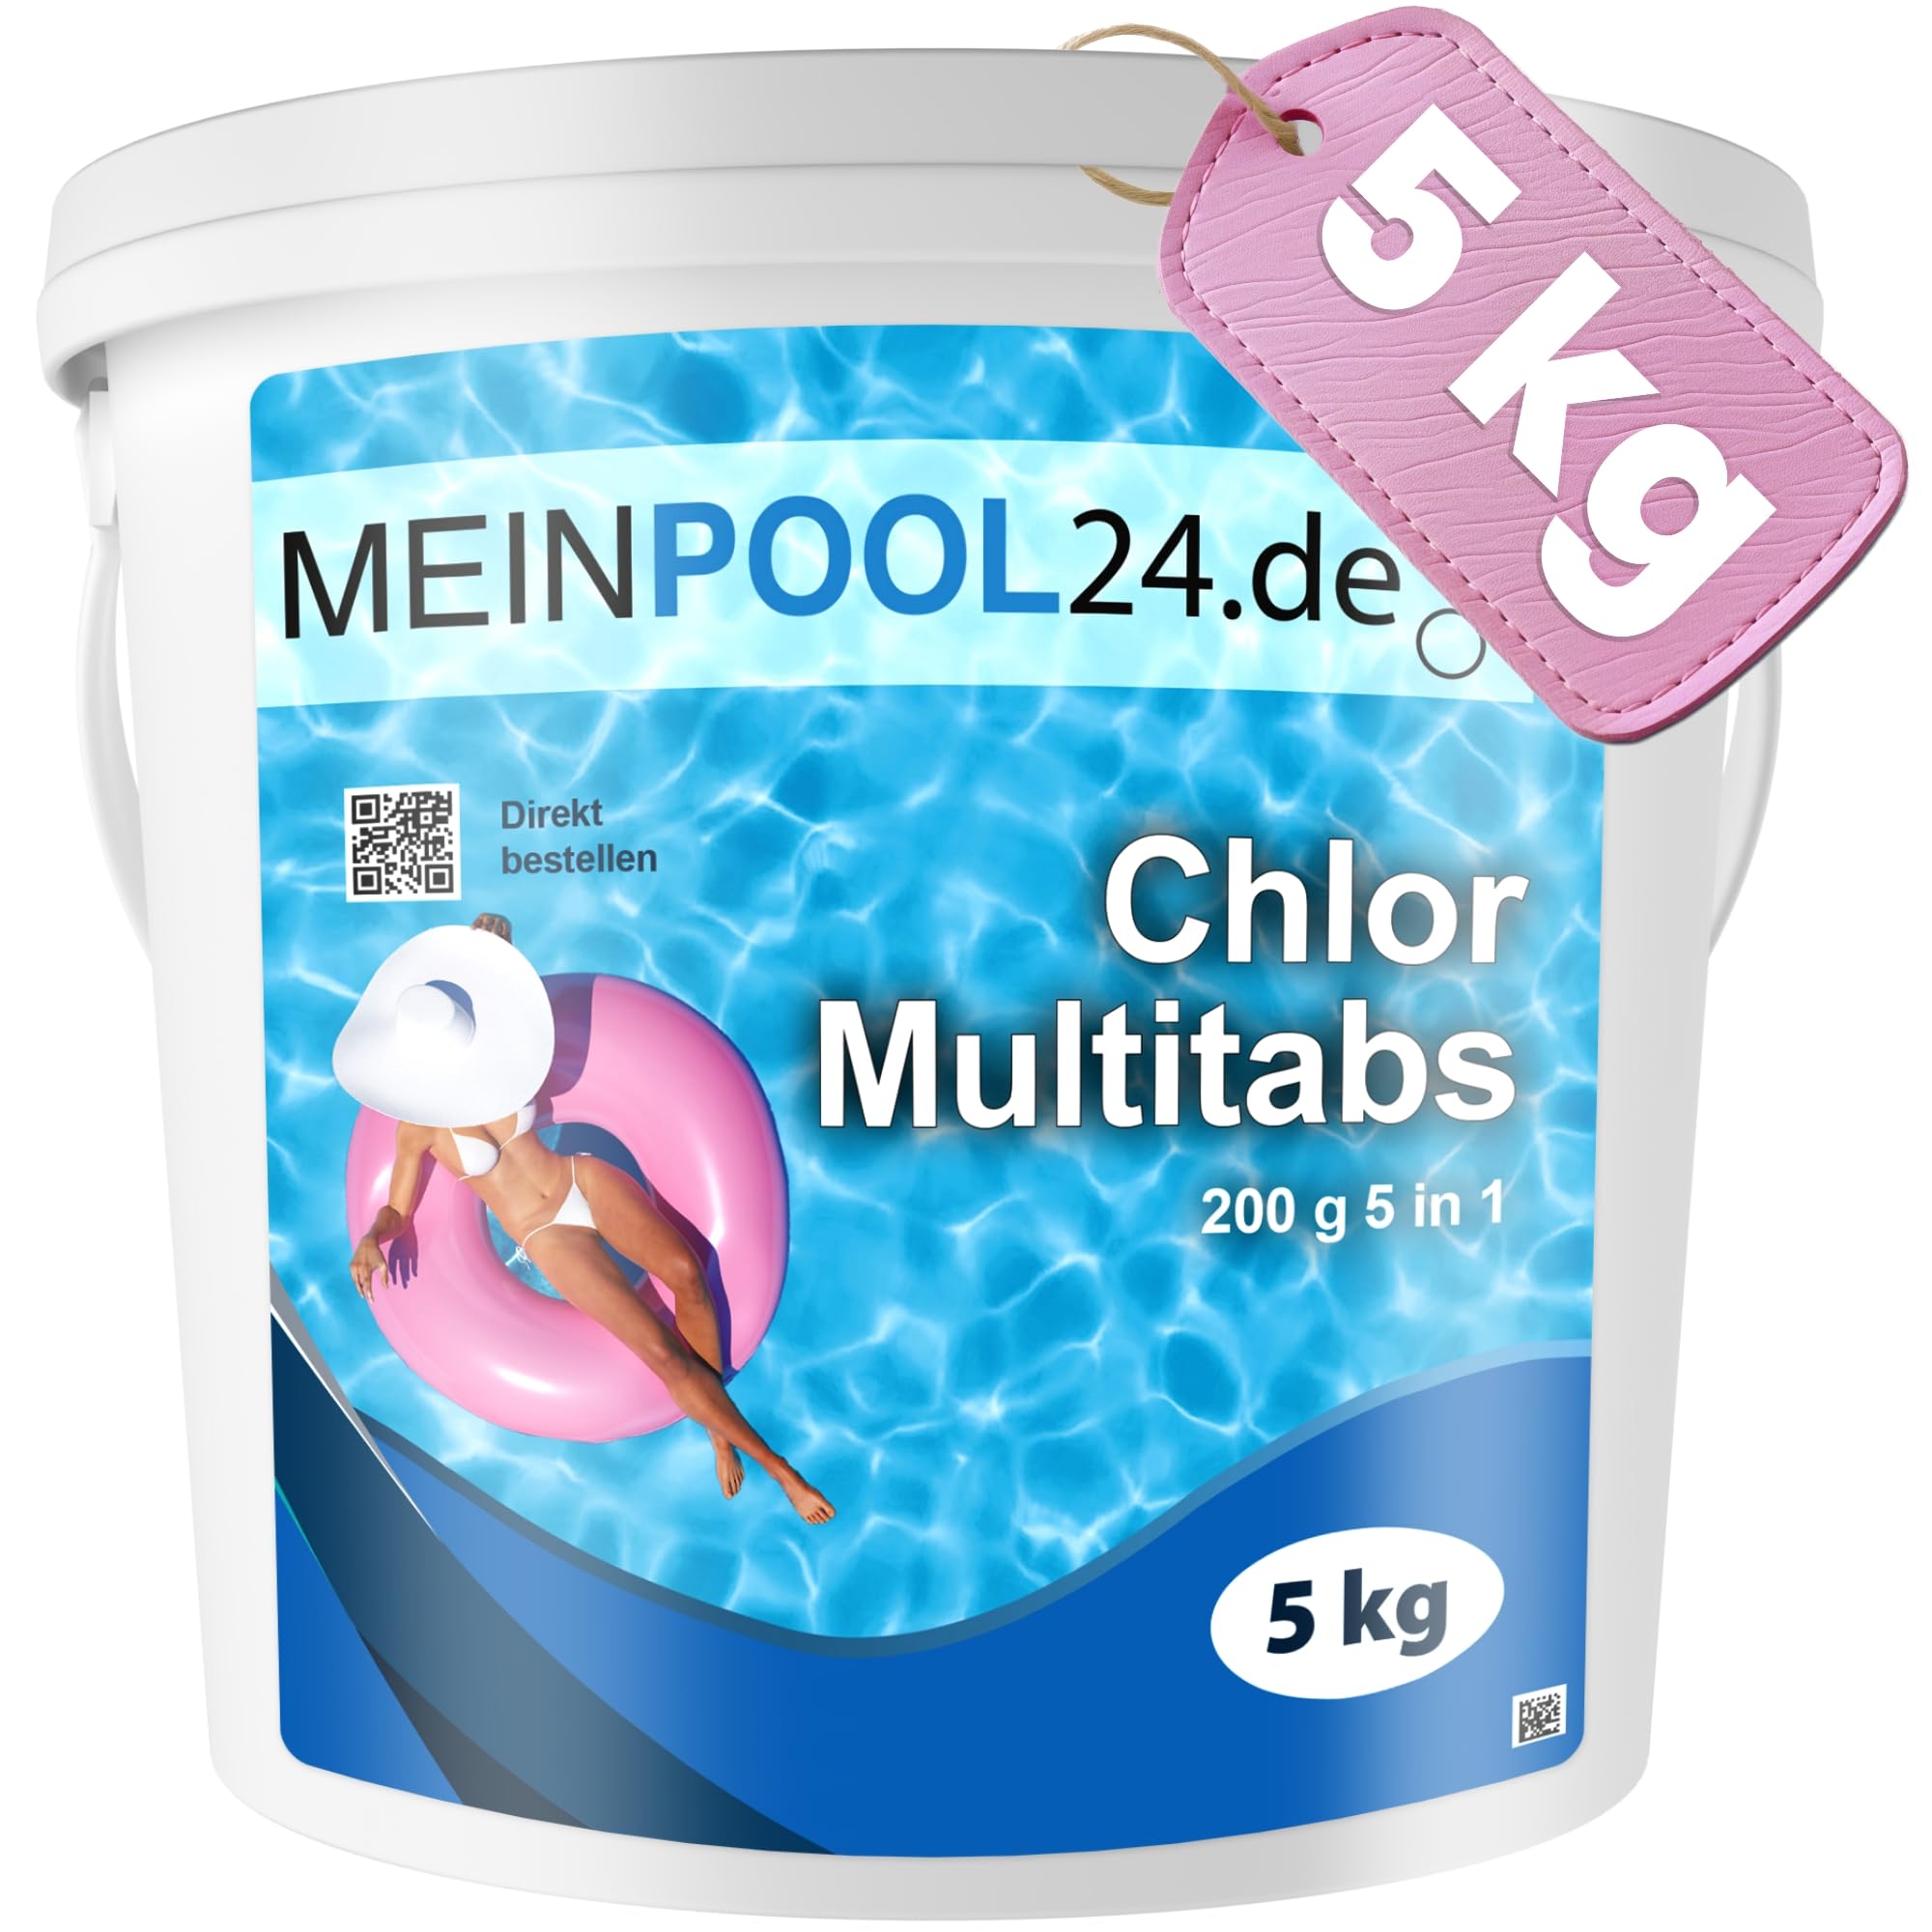 5 kg Chlor Multitabs für den Swimmingpool Marke Meinpool24.de 200g Multifunktionstabletten